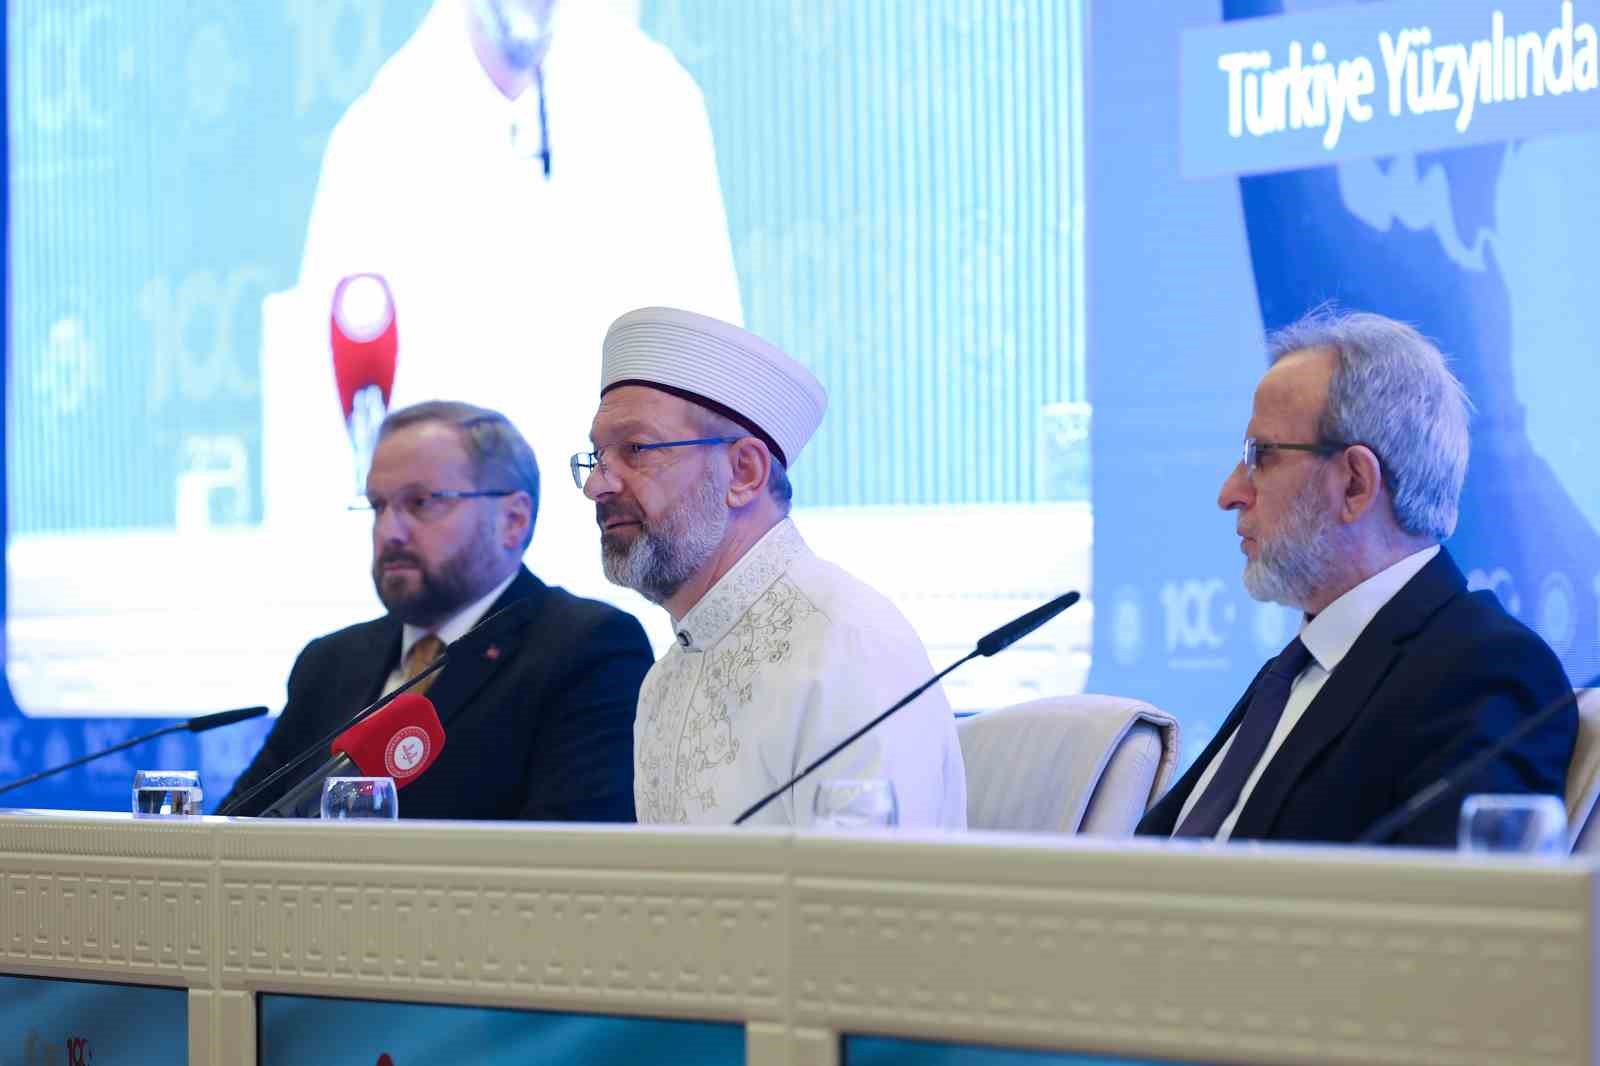 Diyanet İşleri Başkanı Erbaş: “Avrupa’da İslam’a yönelik mühendislik çalışmasının varlığı kabul edilemez”